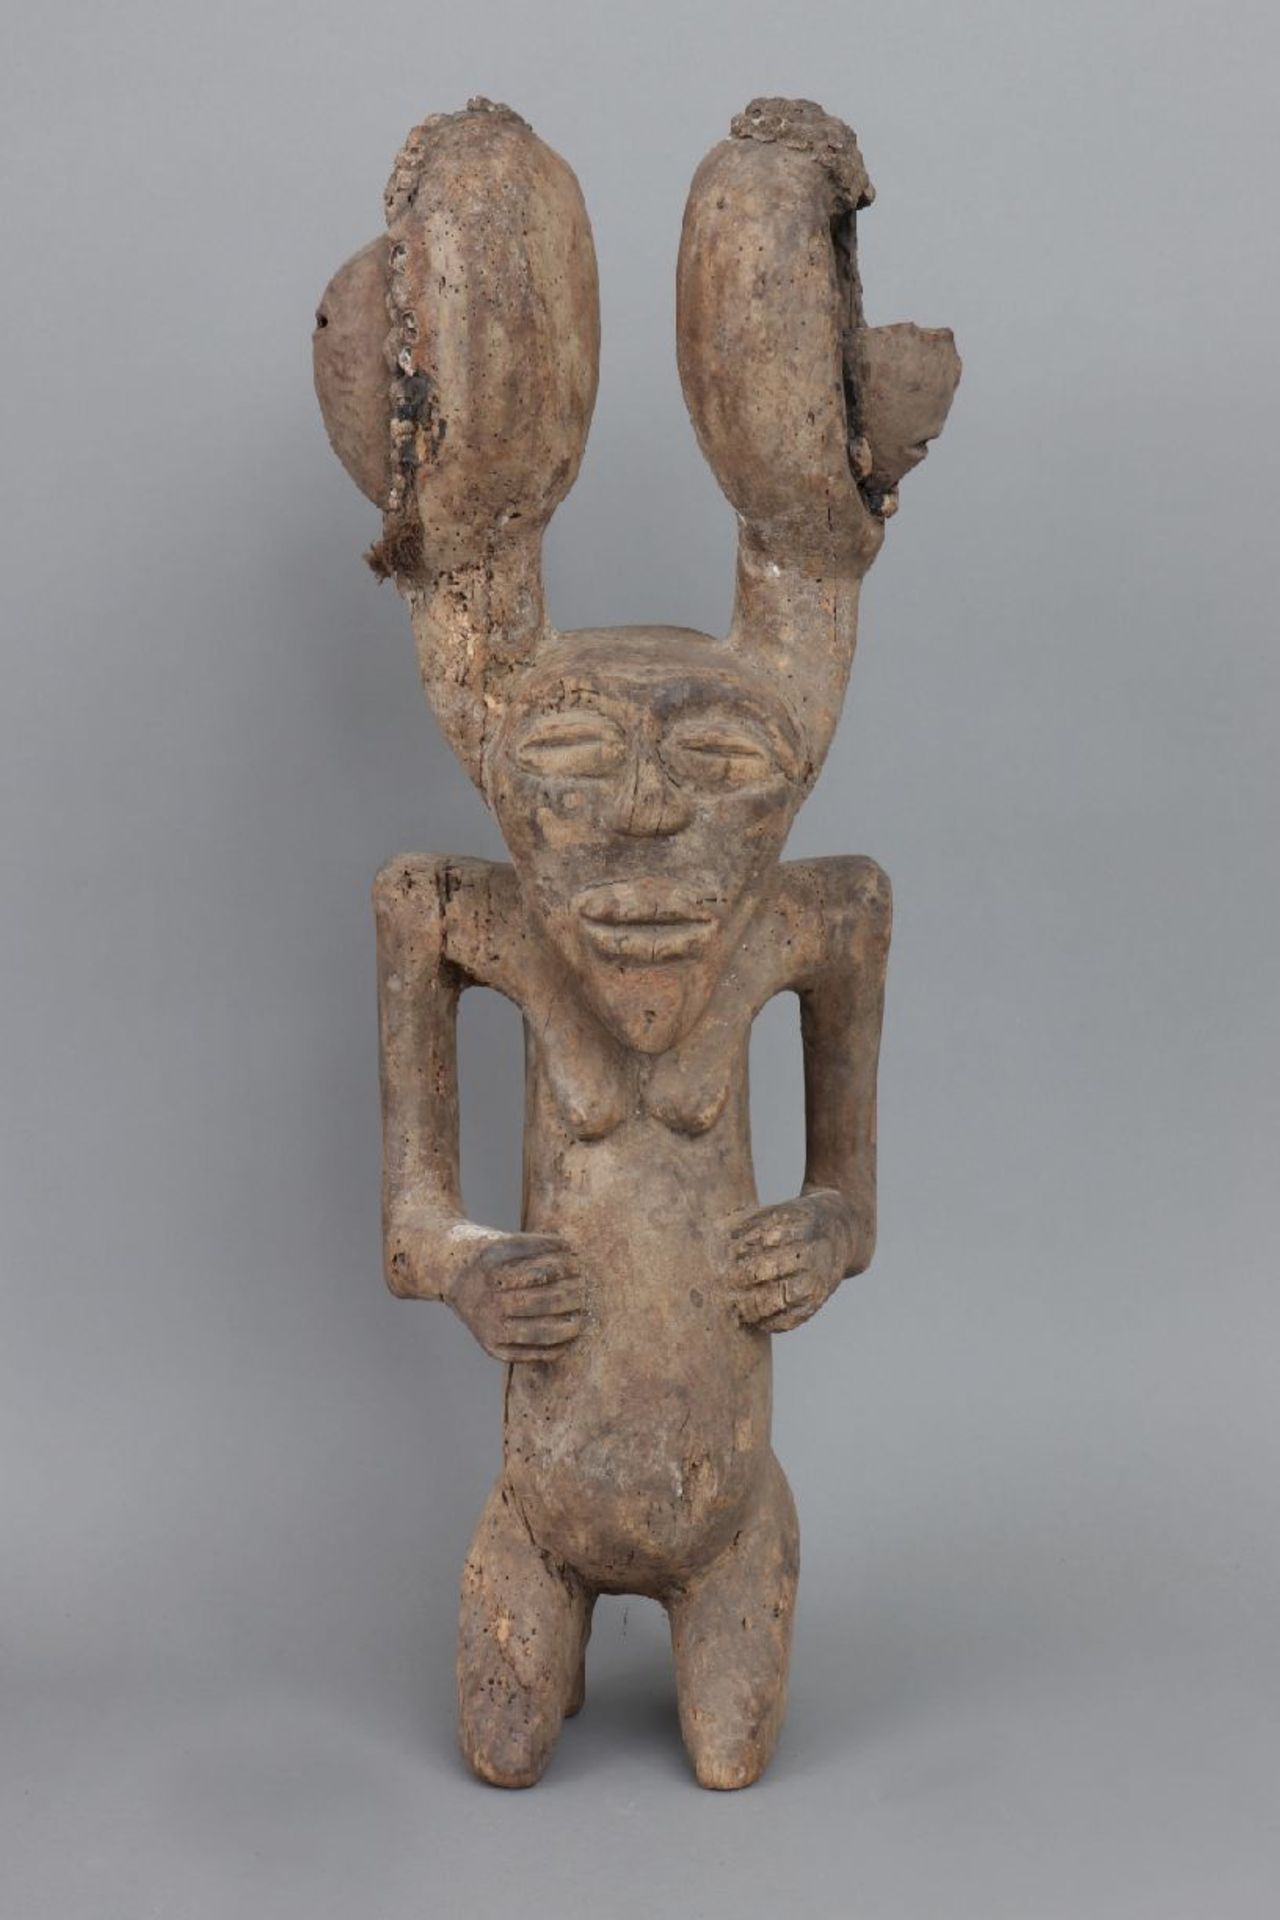 Afrikanische Ikenga Figur der Igbo, NigeriaHolz, geschnitzt und patiniert, knieende weibliche